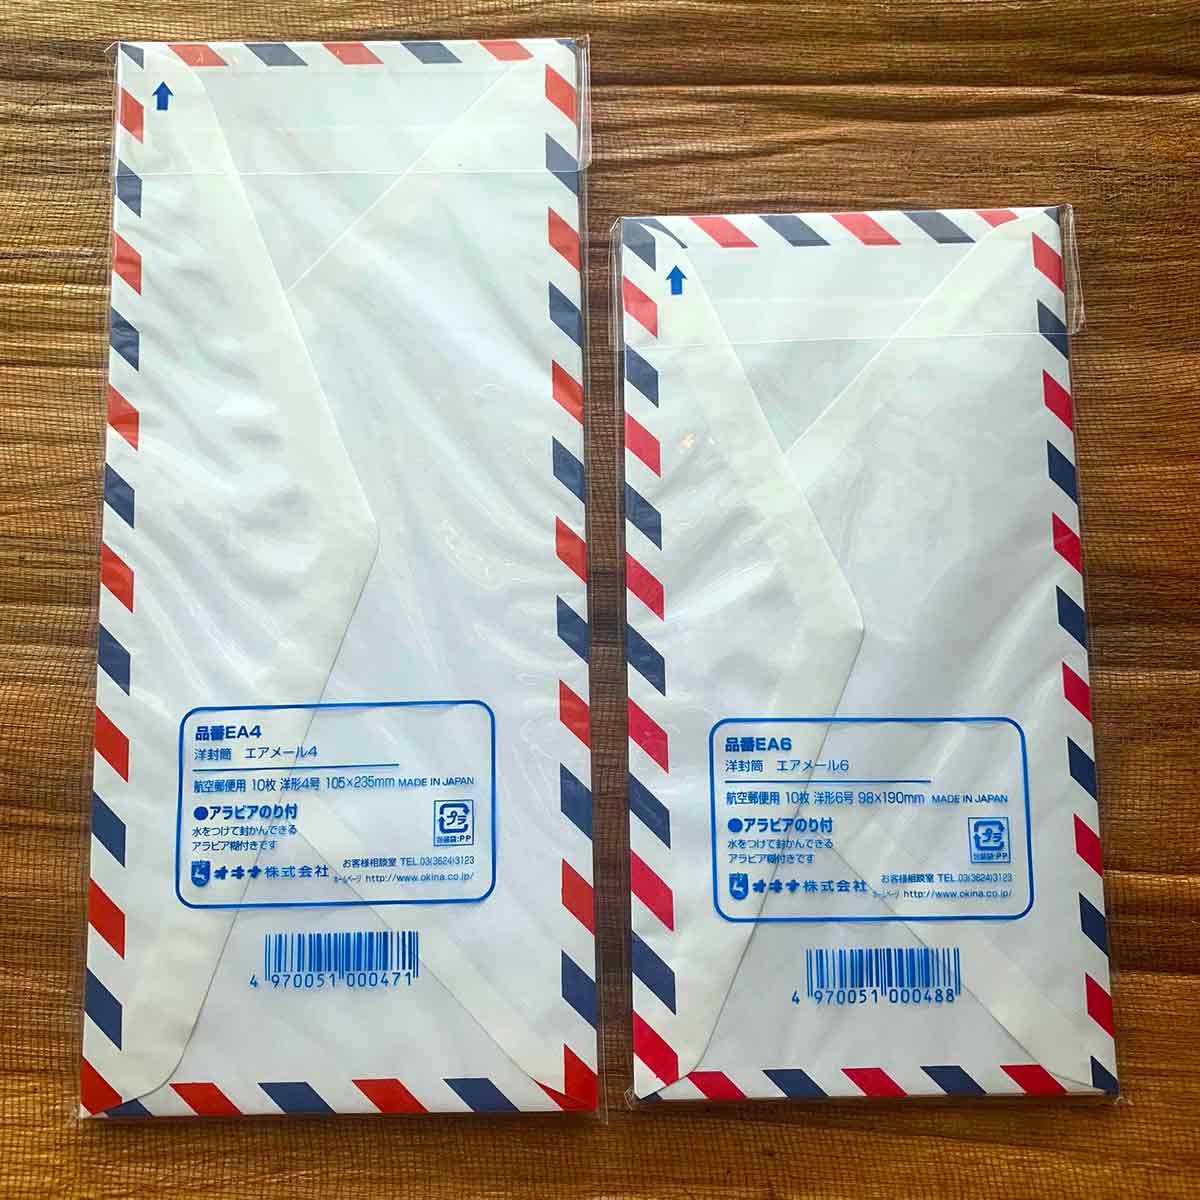 Midori Stationery Air Mail Envelopes